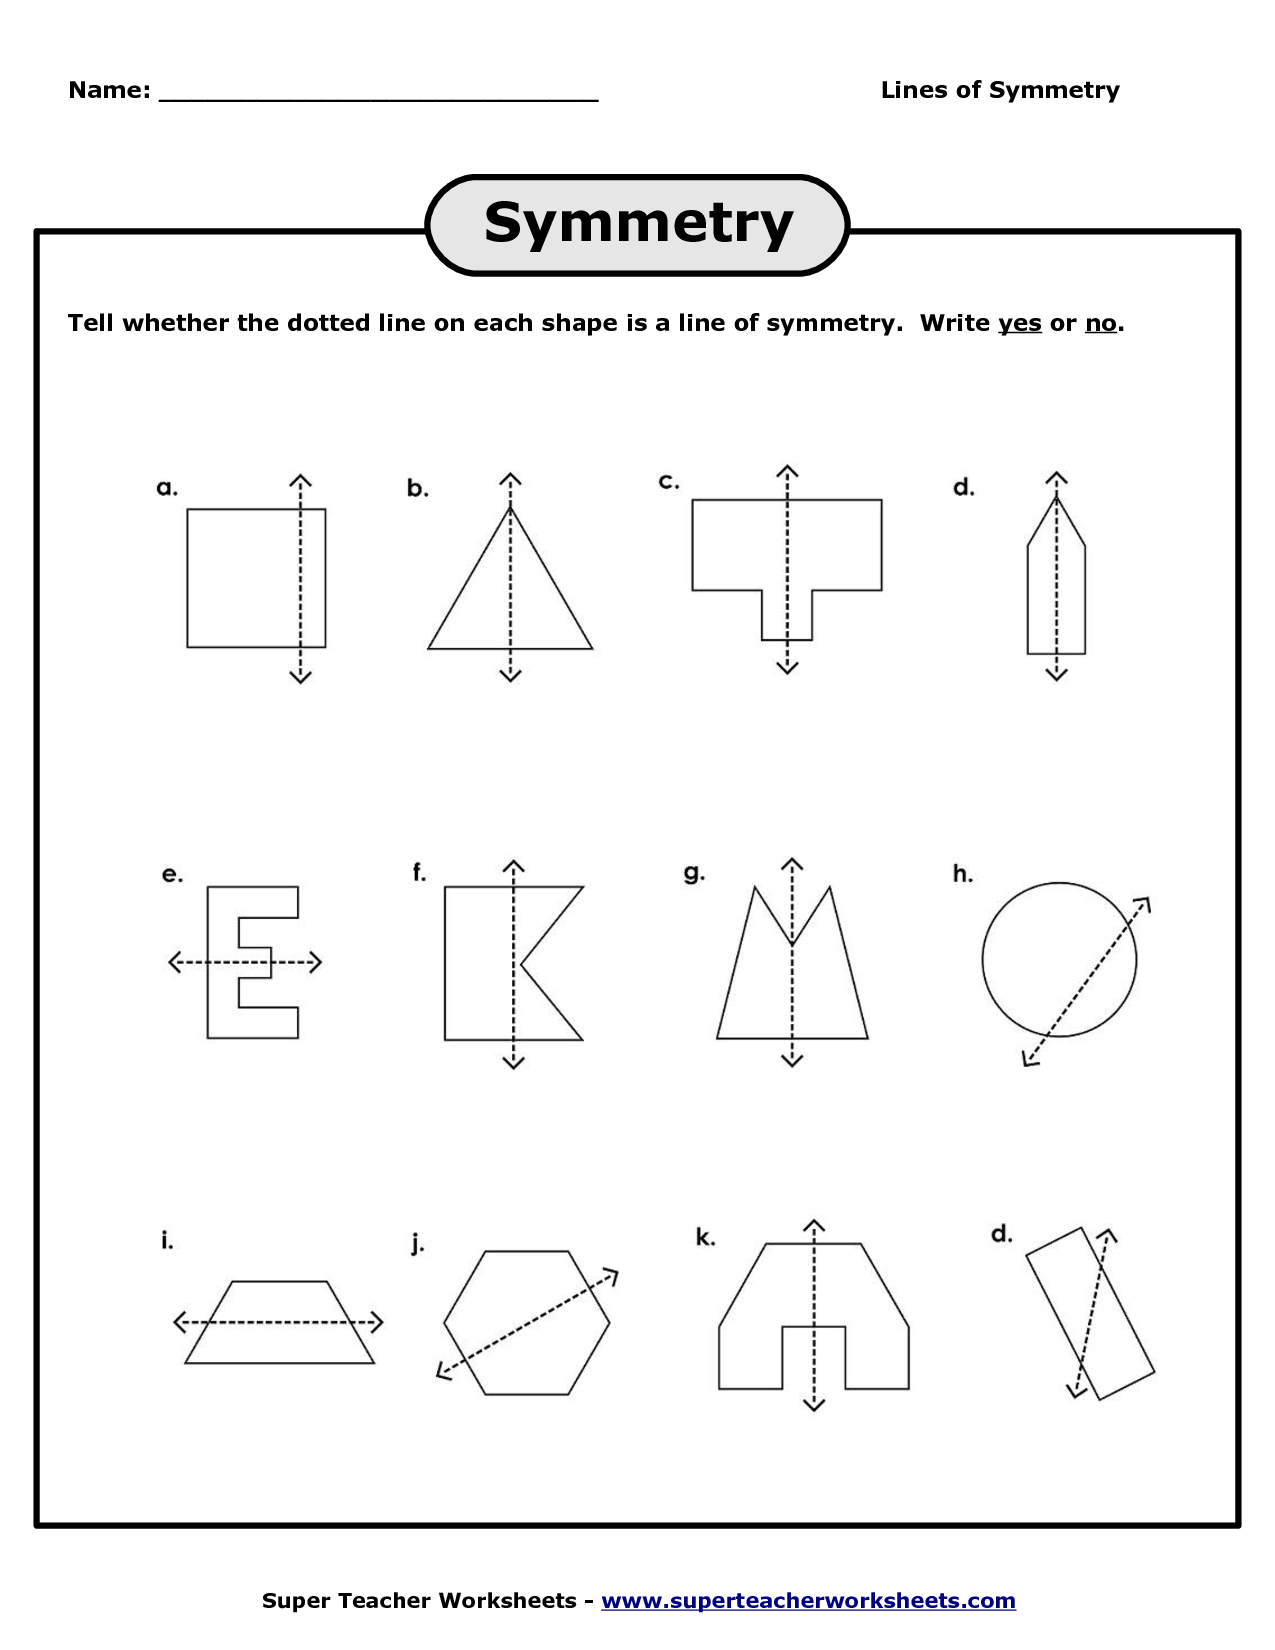 Lines Of Symmetry Worksheets | Lines Of Symmetry Worksheet